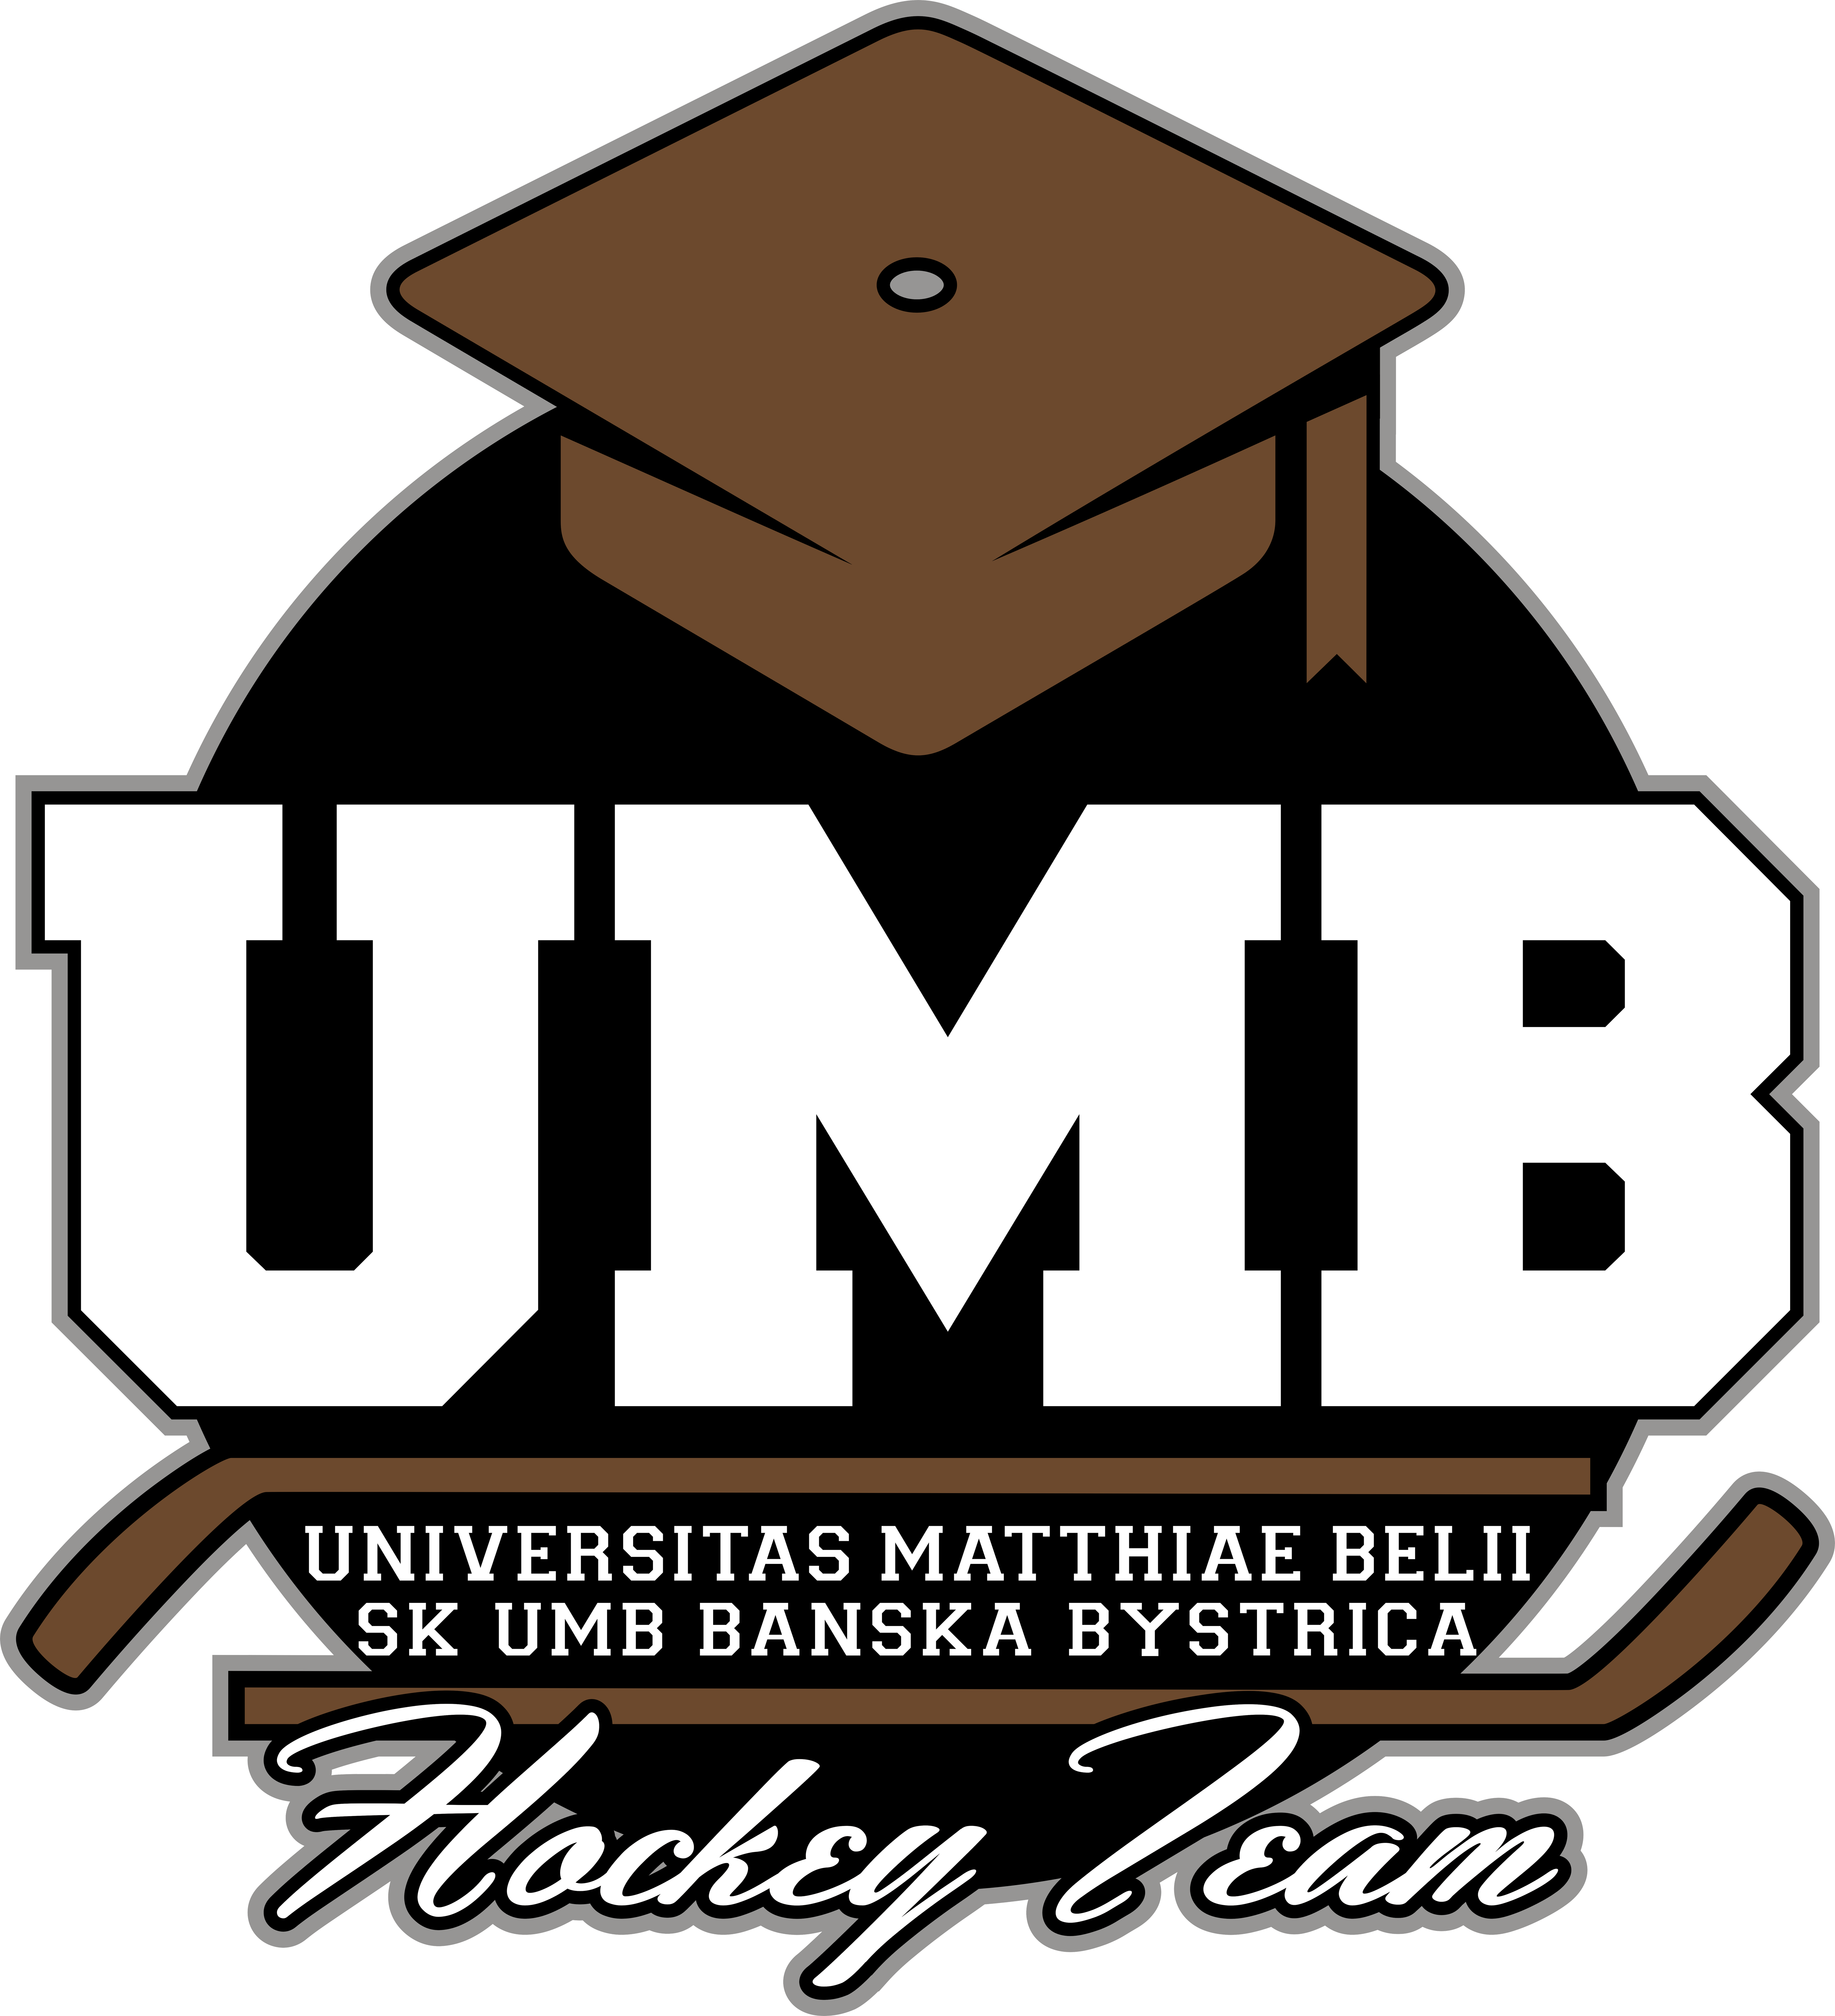 Umb hockey team